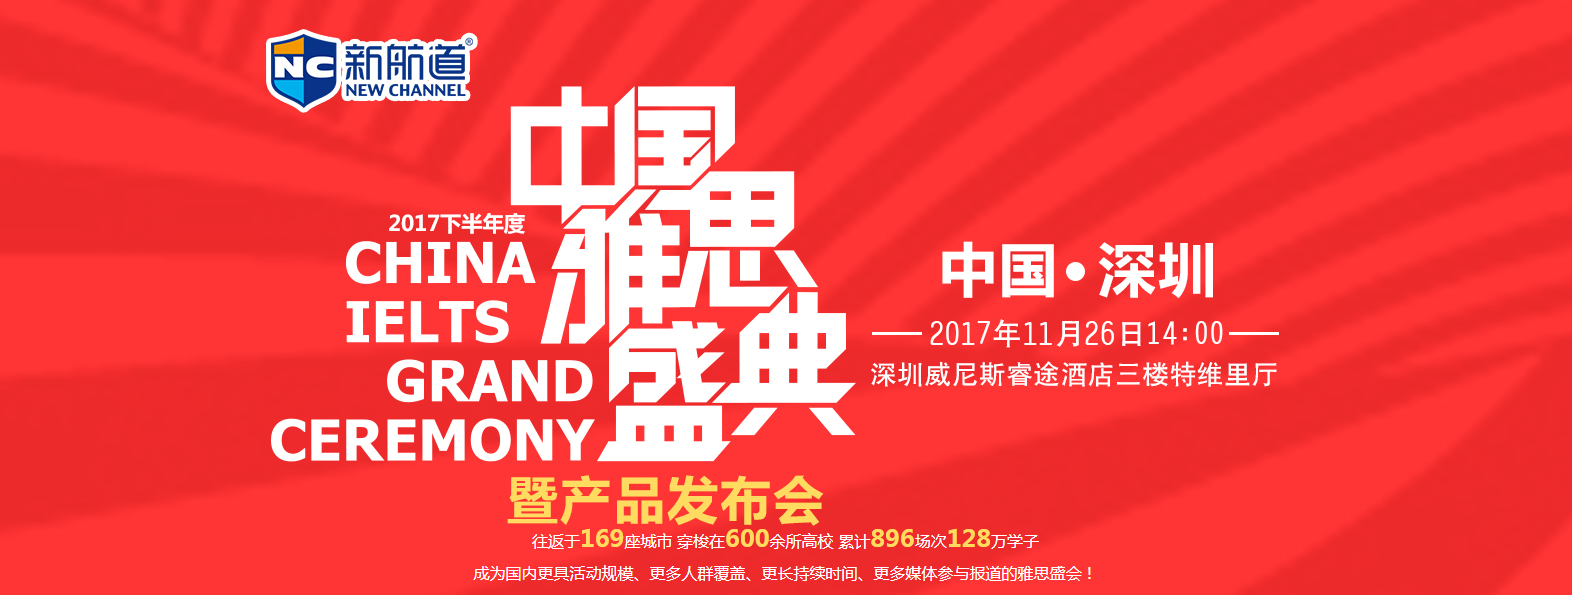 2017中国雅思盛典——中国雅思培训界年度学术盛会